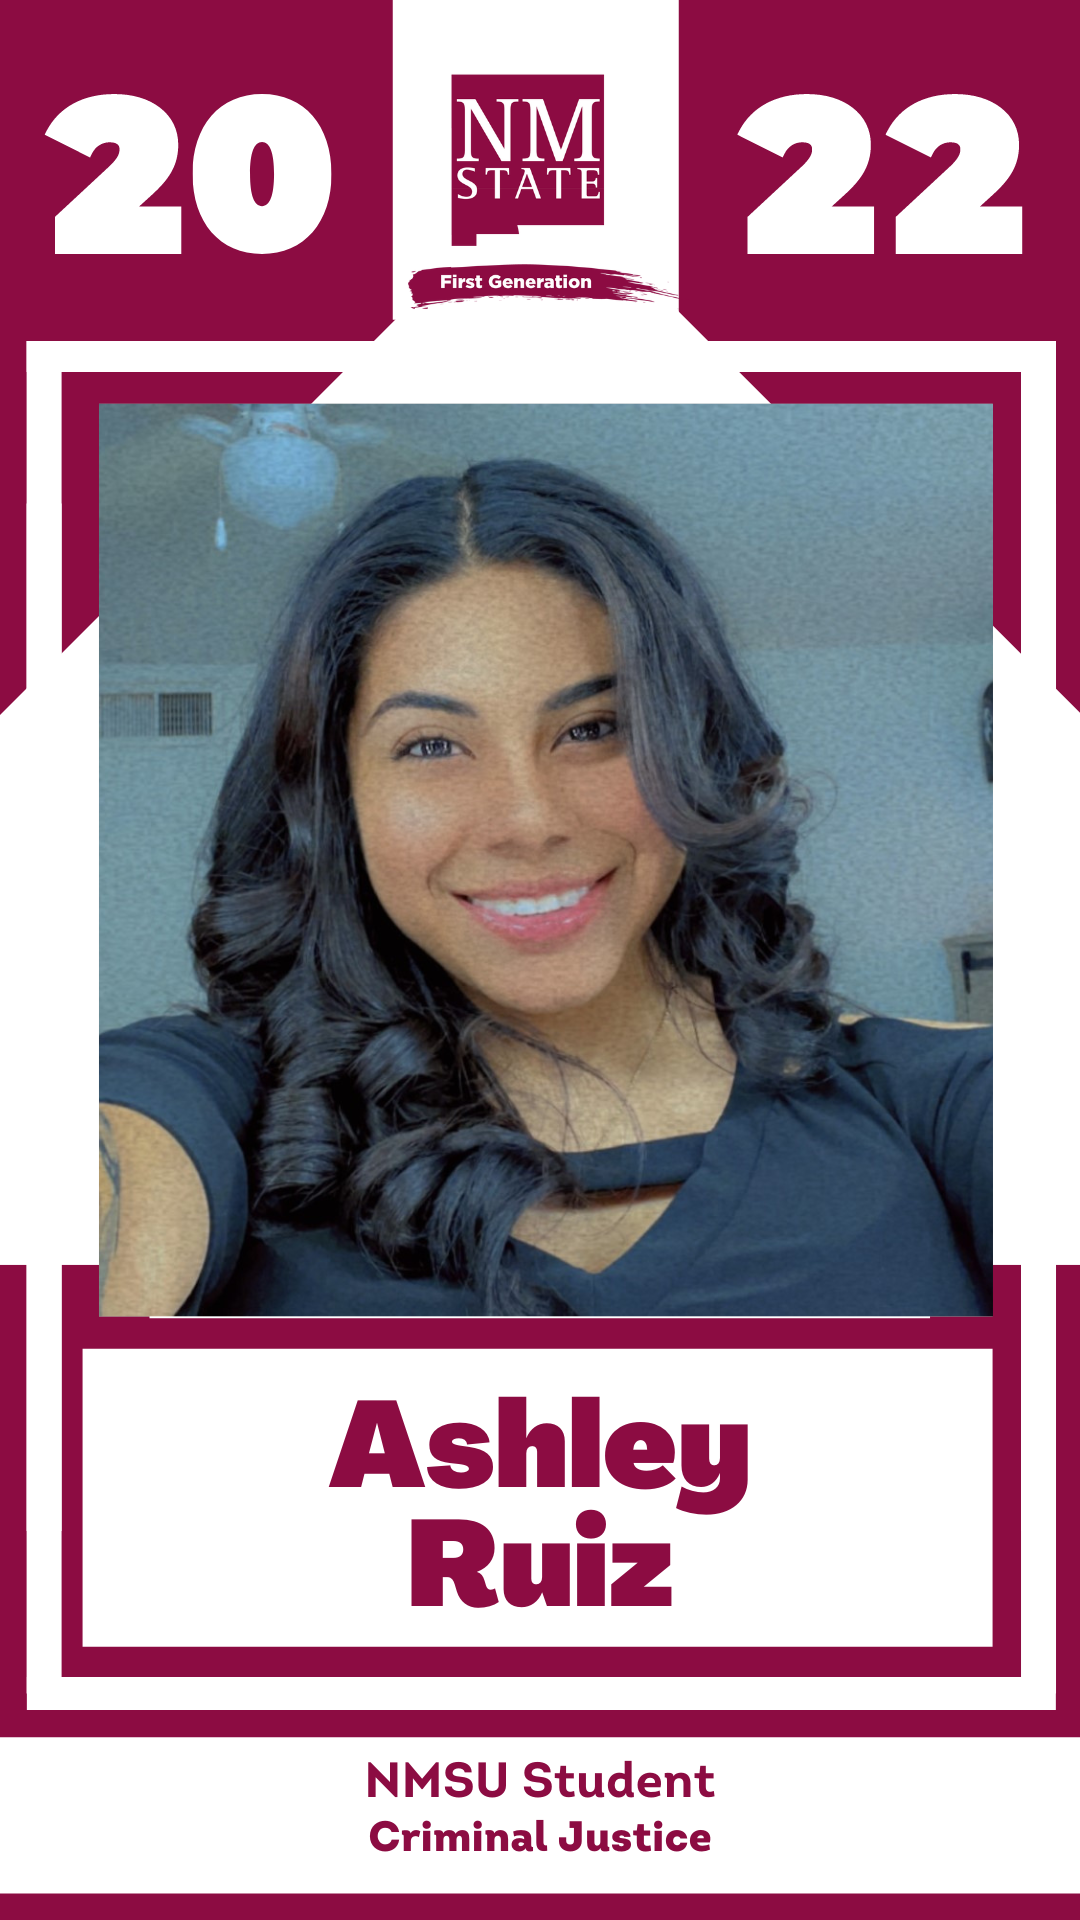 Ashley-Ruiz.png